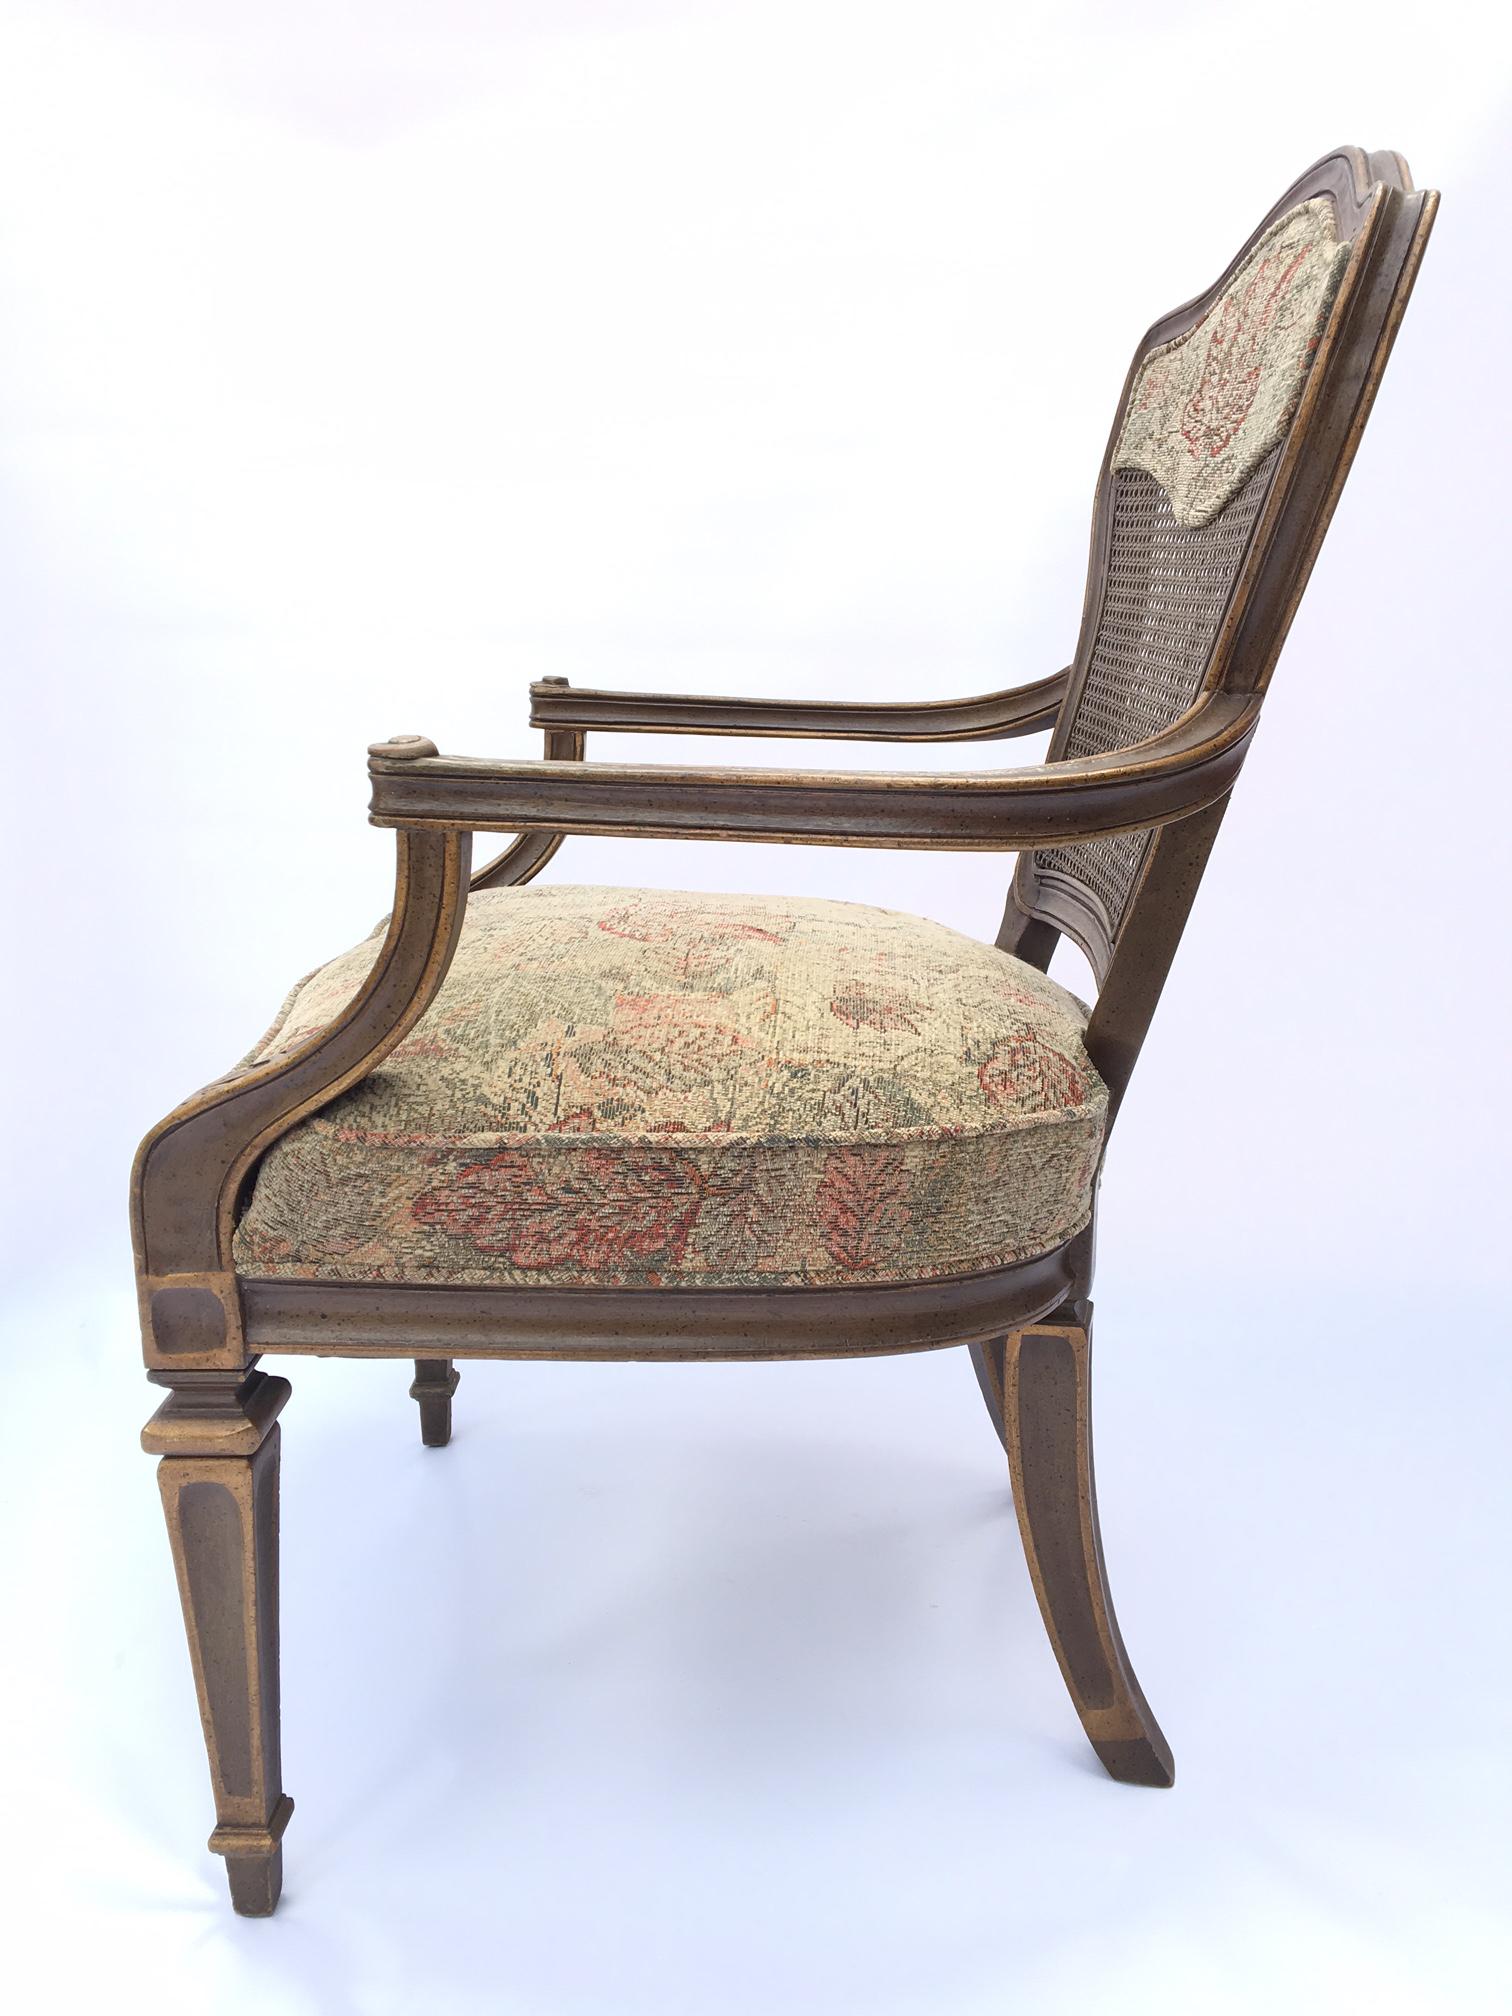 Ein Paar Sessel mit Rohrrücken, gepolstert mit Blumentapete. Guter Vintage-Zustand mit geringen altersbedingten Gebrauchsspuren.